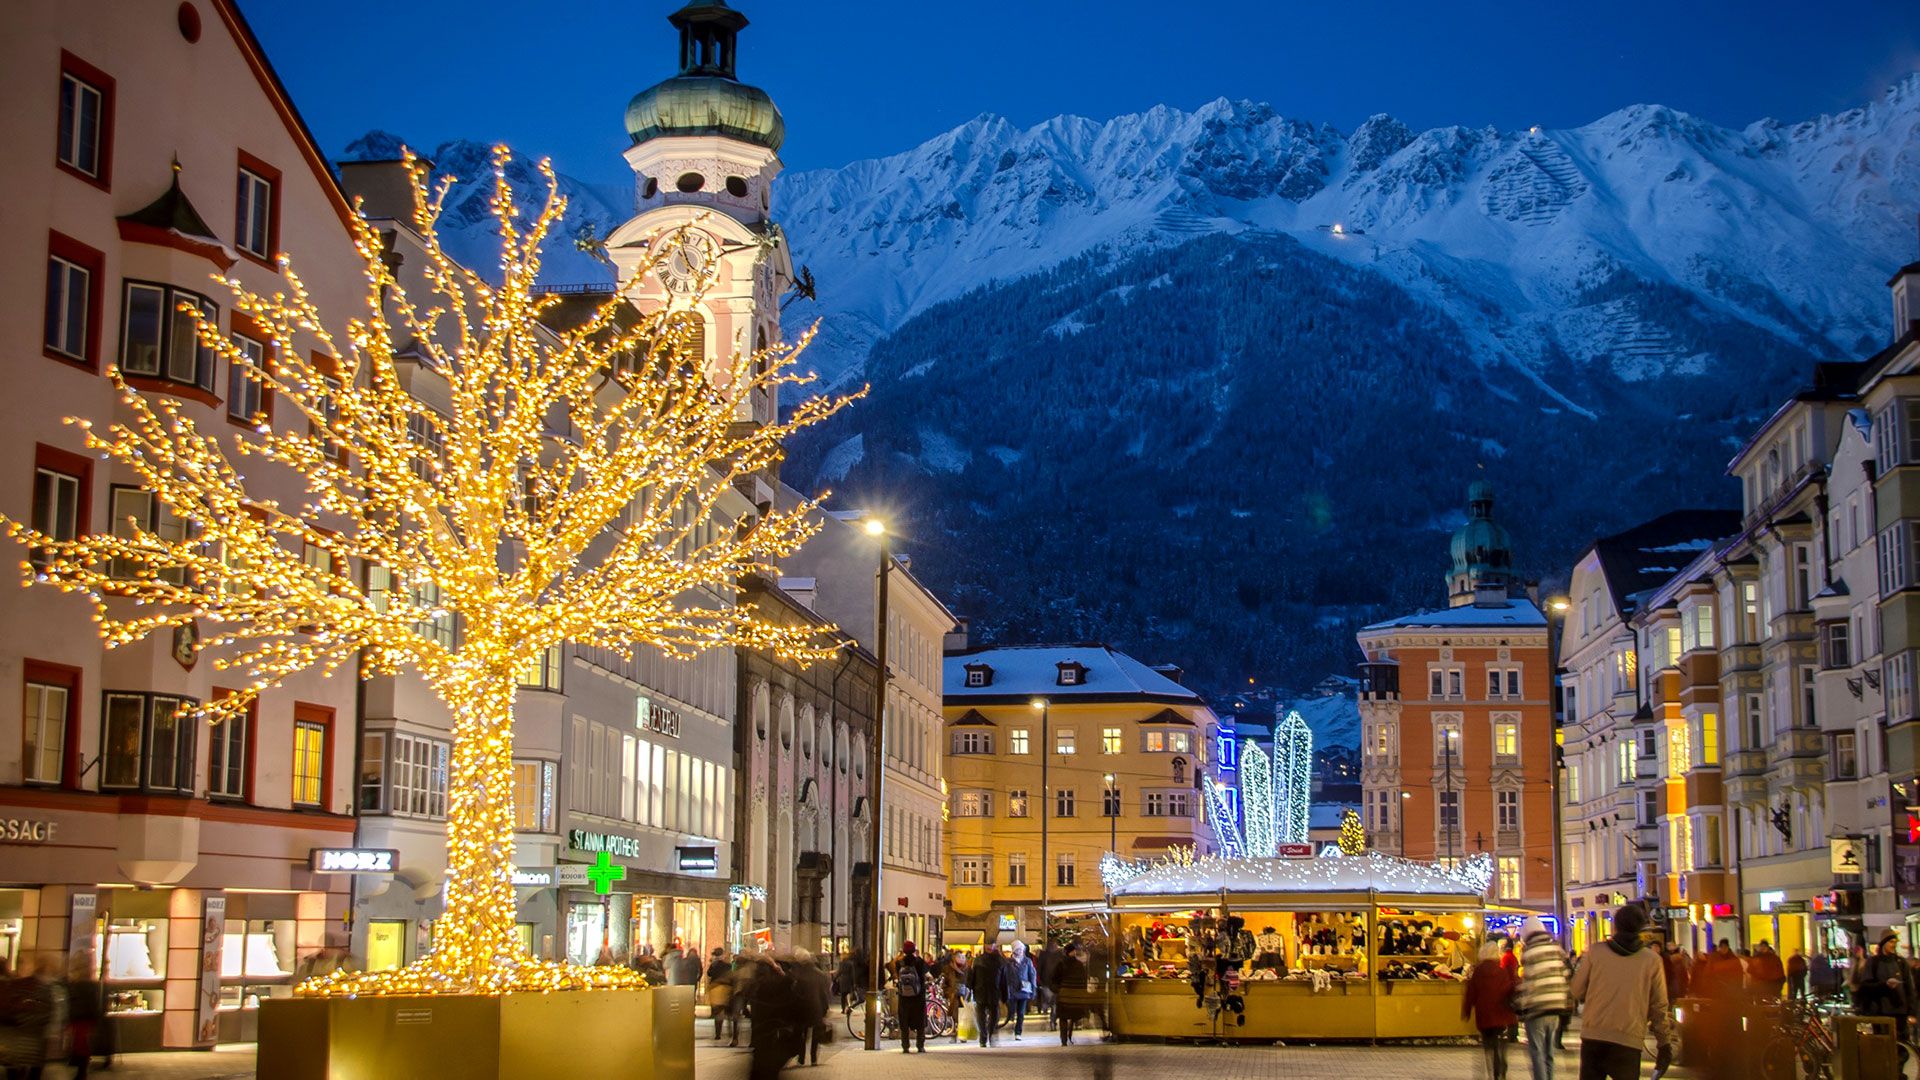 Vipiteno Mercatini Di Natale Foto.Mercatini Di Natale A Innsbruck E Vipiteno Pettina Viaggi E Turismo